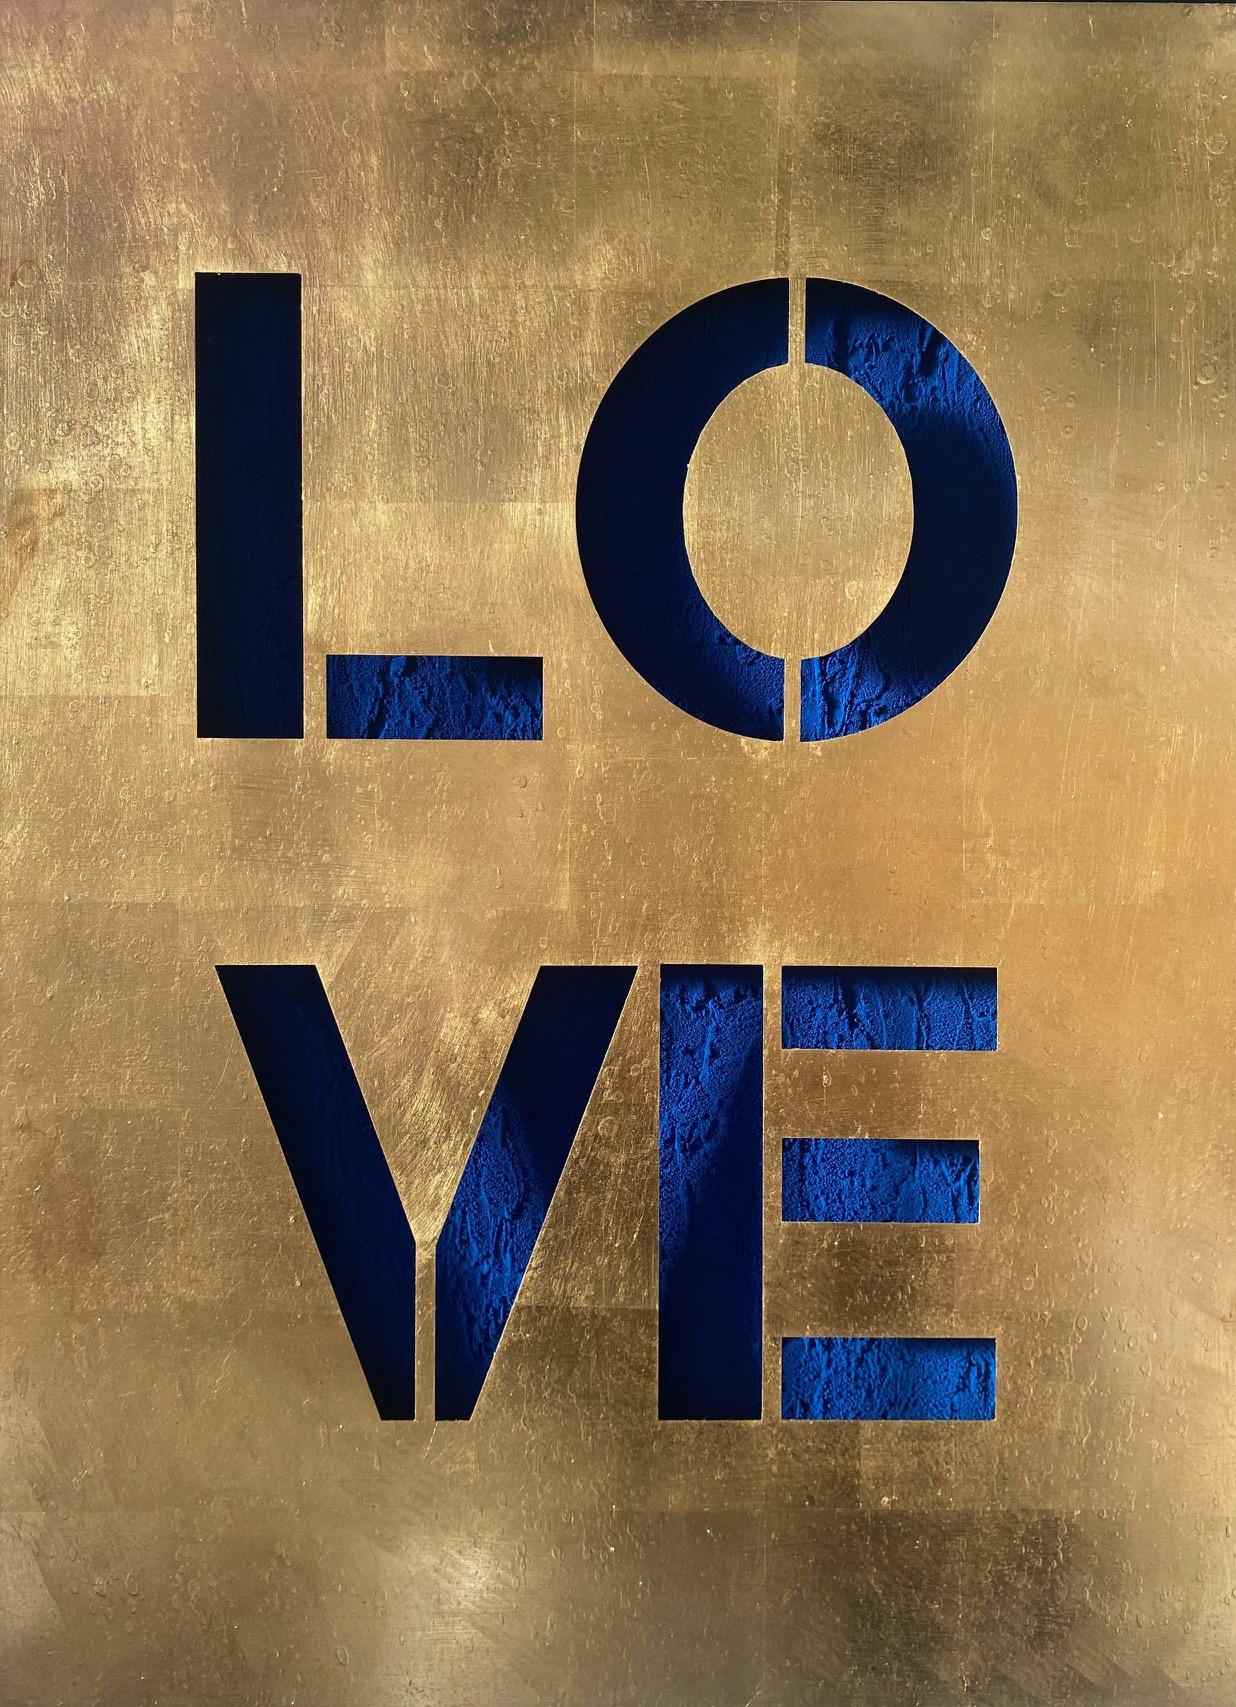 LOVE Royal Blue - zeitgenössische Original-Pop-Art in Gold und Blau, ausgeschnitten  – Mixed Media Art von Devin Miles